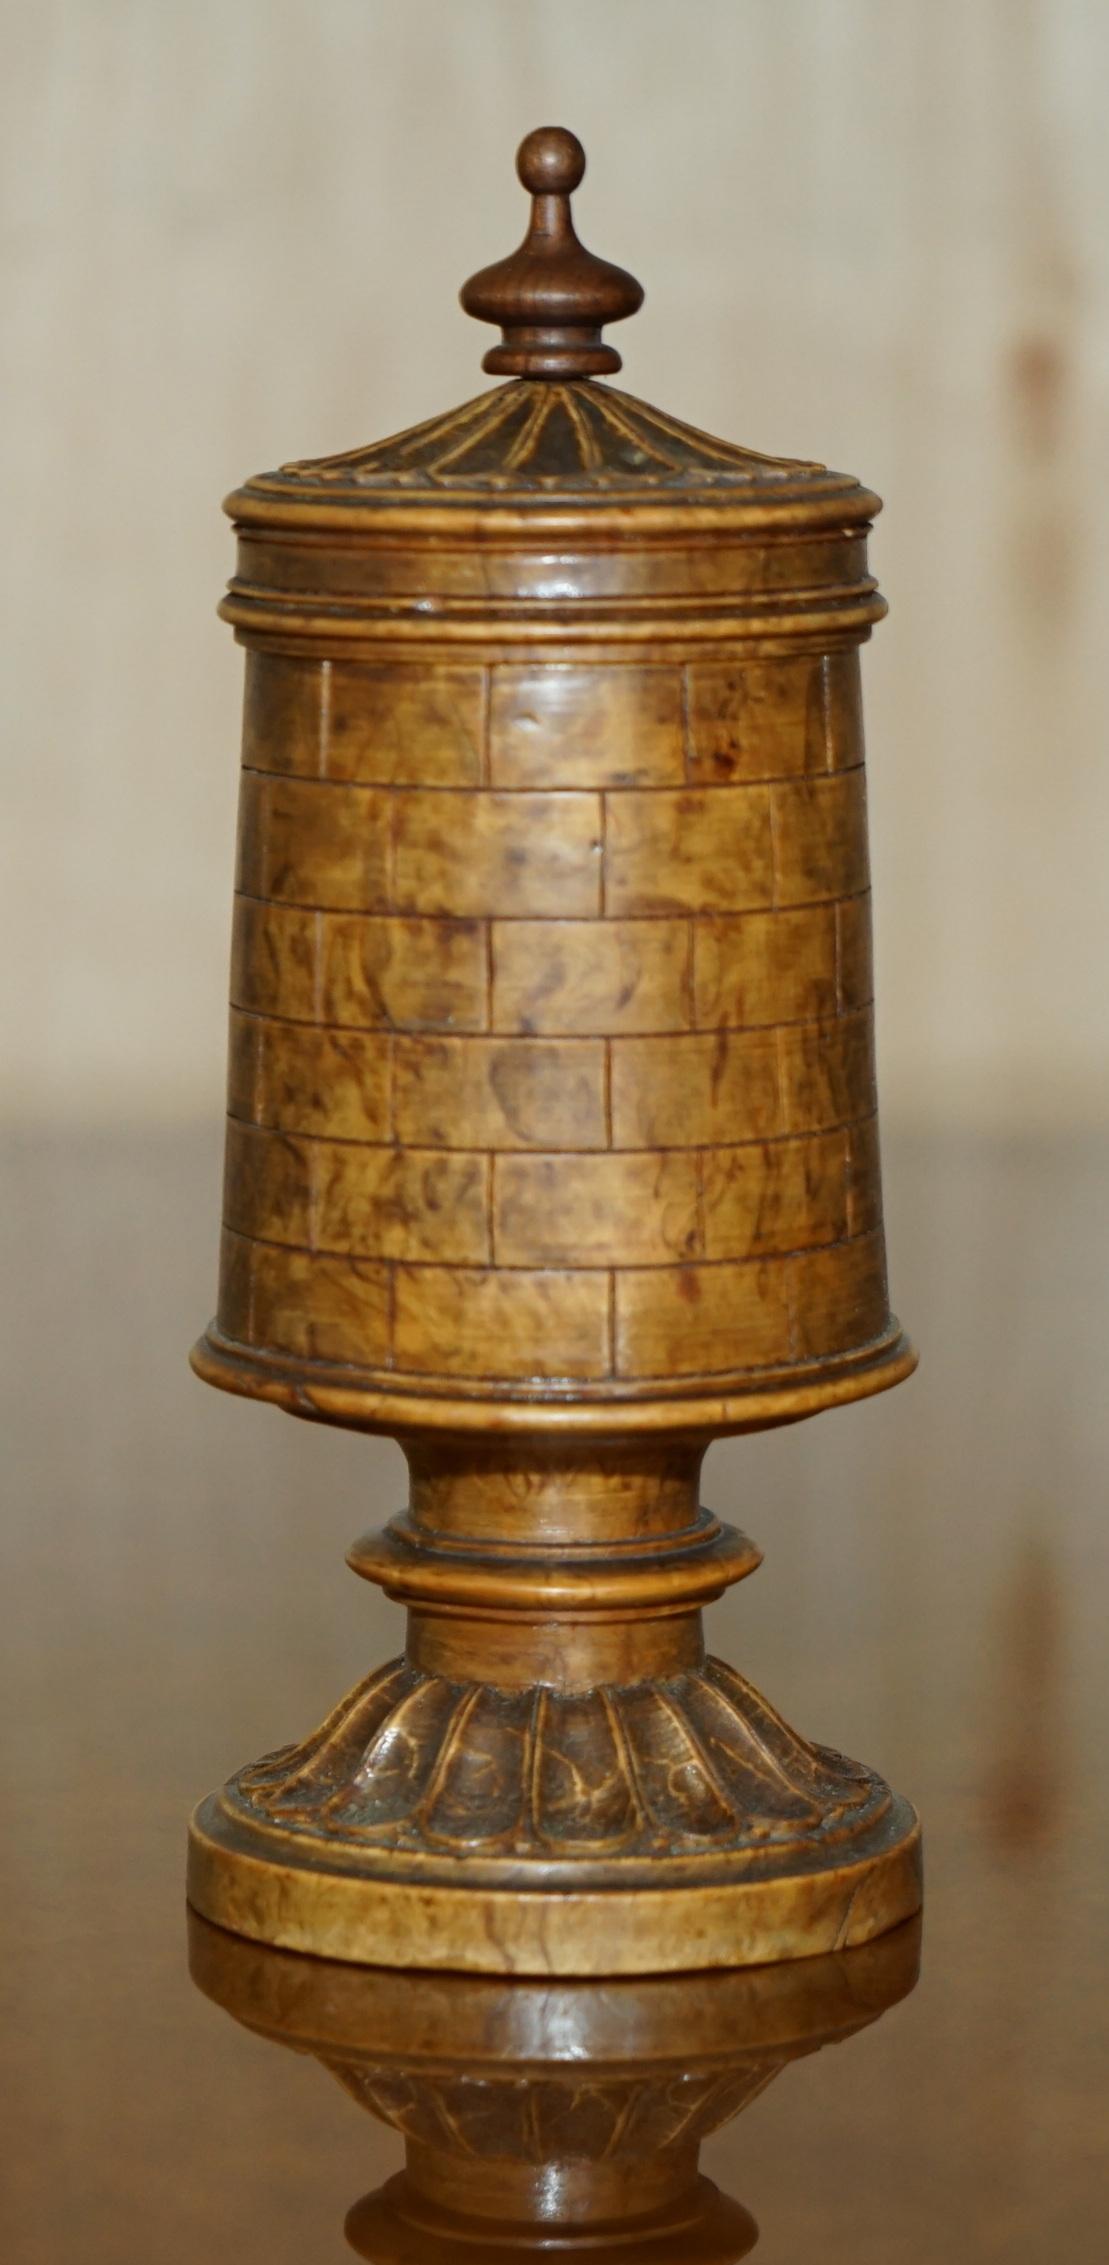 Royal House Antiques

The House Antiques a le plaisir d'offrir à la vente ce très rare pot à vélo du 18ème siècle sculpté à la main en forme de tour ou de château d'échecs qui contient un jeu d'échecs d'époque. 

Veuillez noter que les frais de